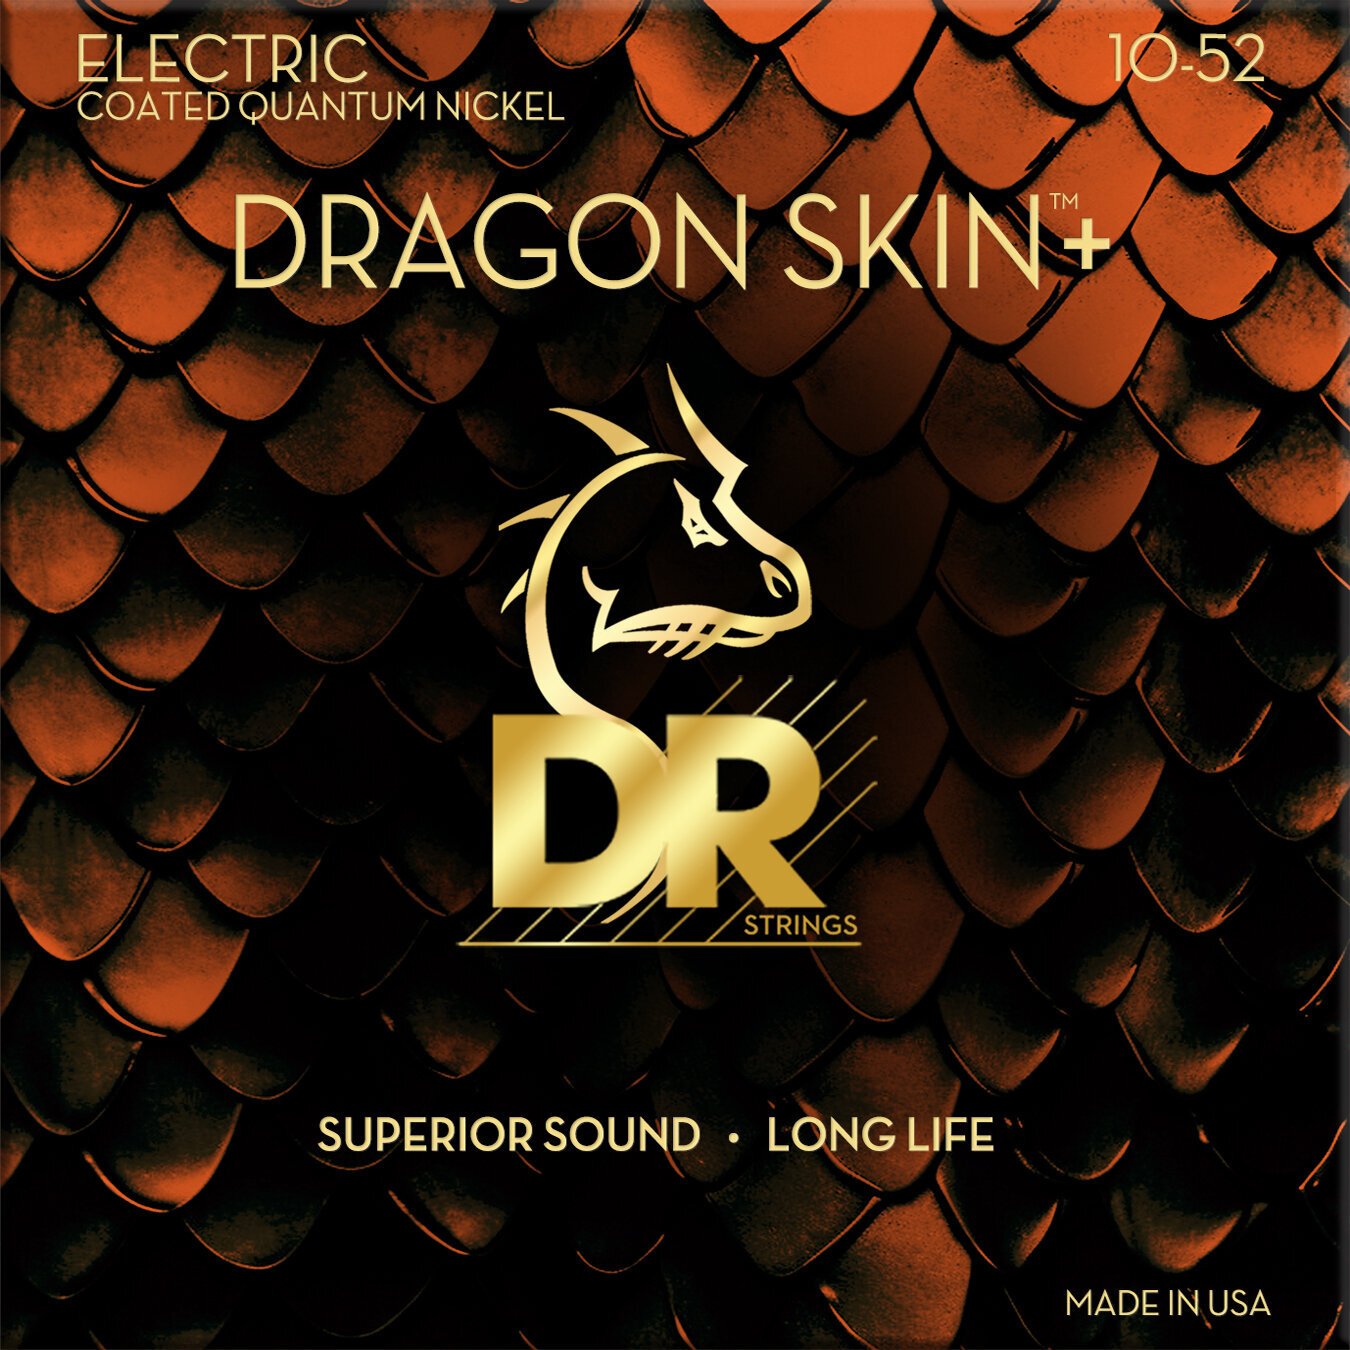 Χορδές για Ηλεκτρική Κιθάρα DR Strings Dragon Skin+ Coated Medium to Heavy 10-52